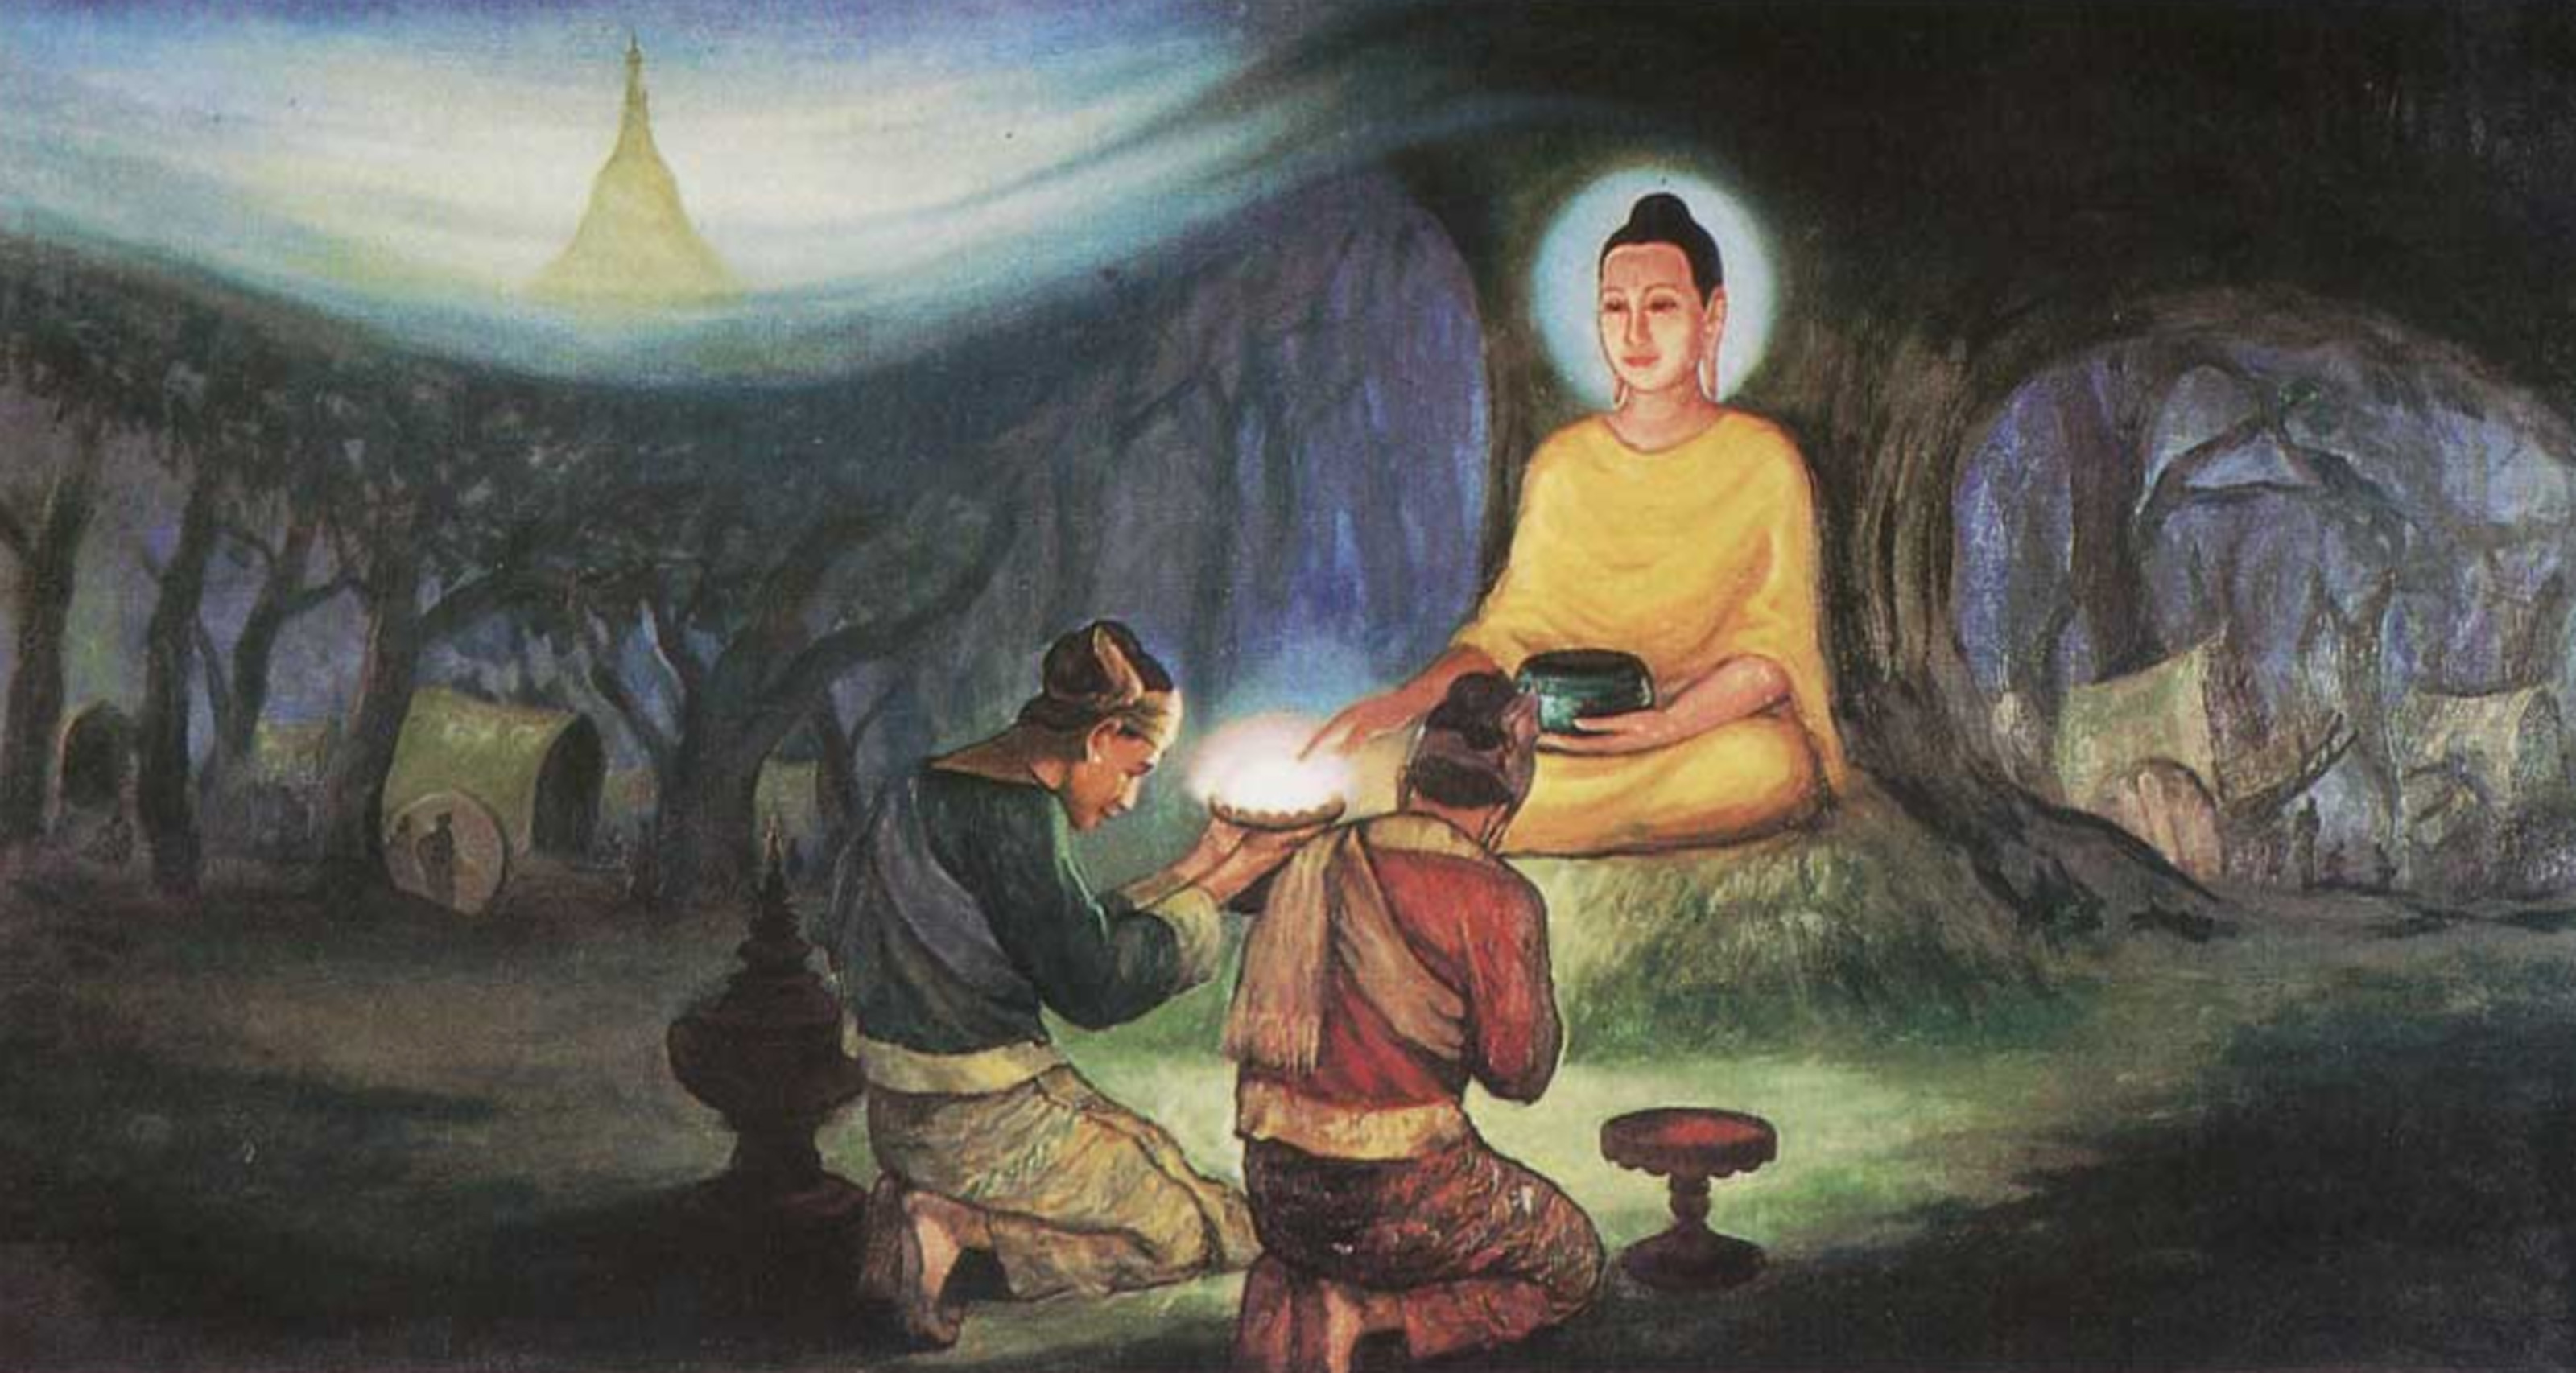 Hai thương gia được chư Thiên mách bảo, sắm sửa vật thực cúng dường lên Đức Phật Thích Ca (hình minh họa)